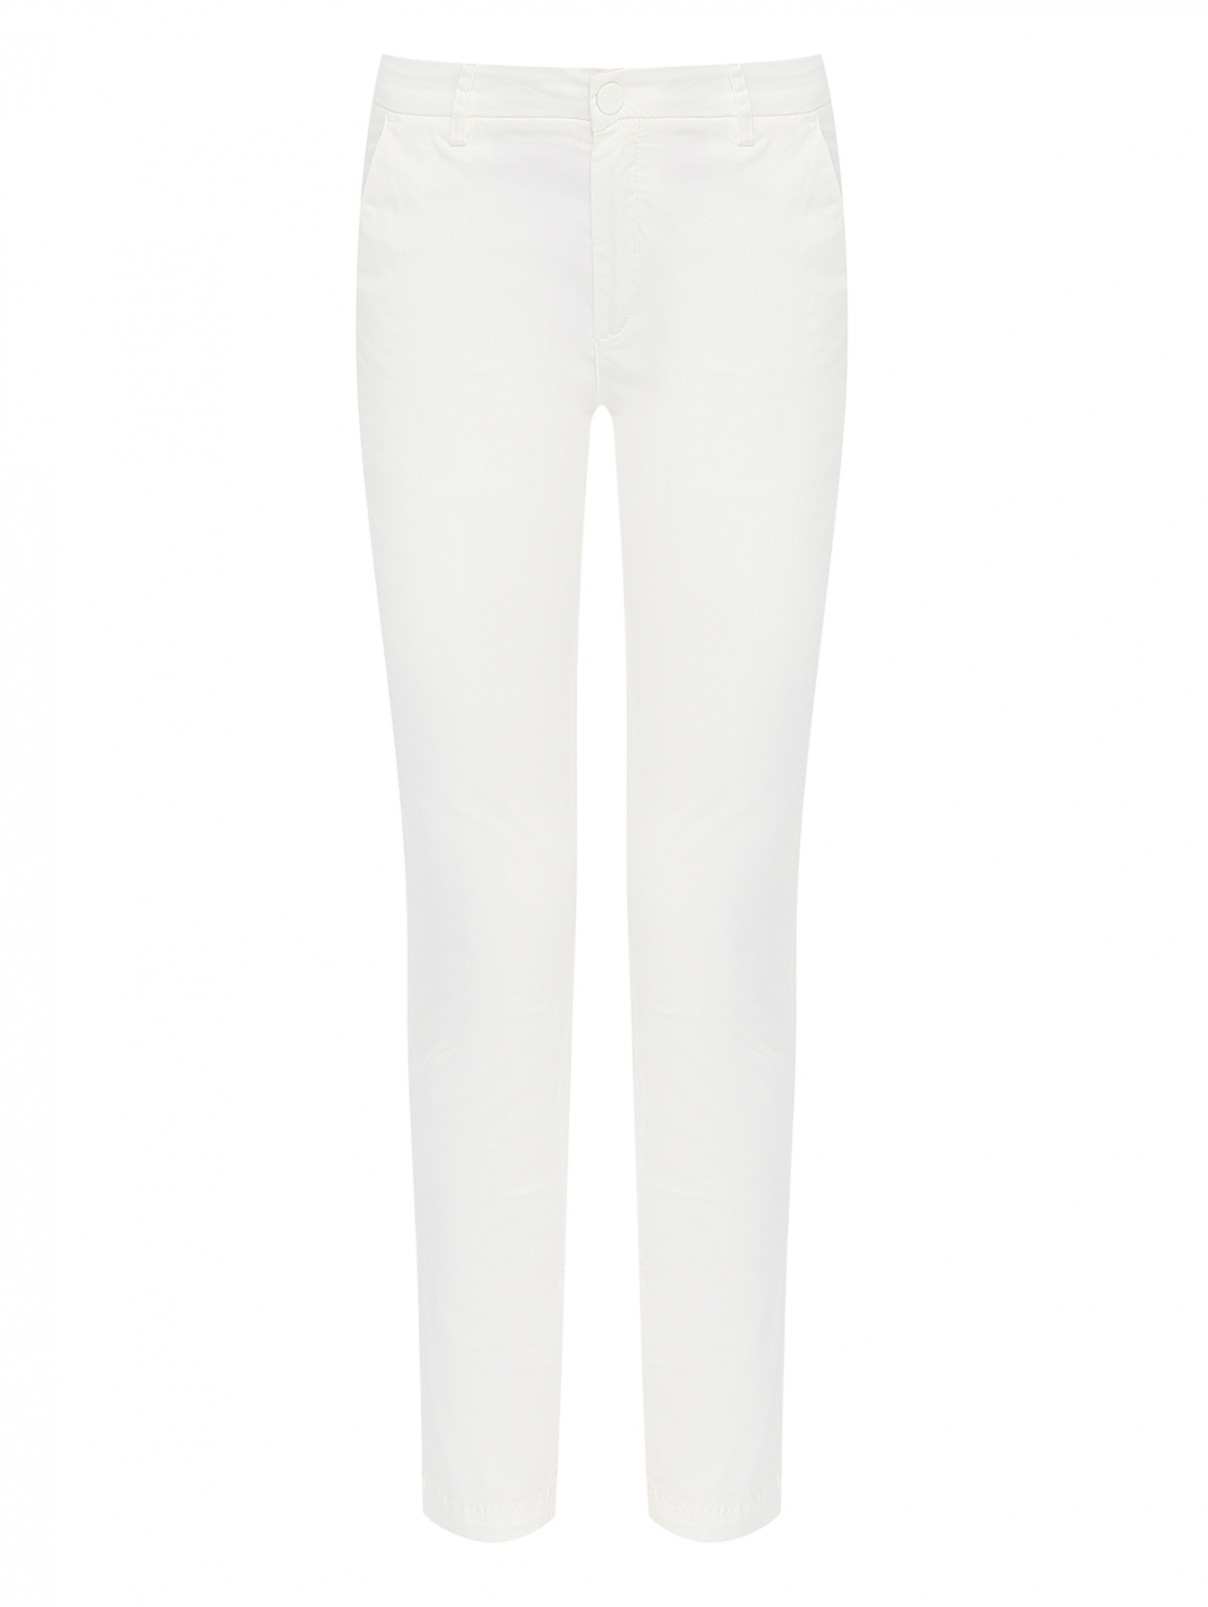 Однотонные брюки из хлопка Frankie Morello  –  Общий вид  – Цвет:  Белый